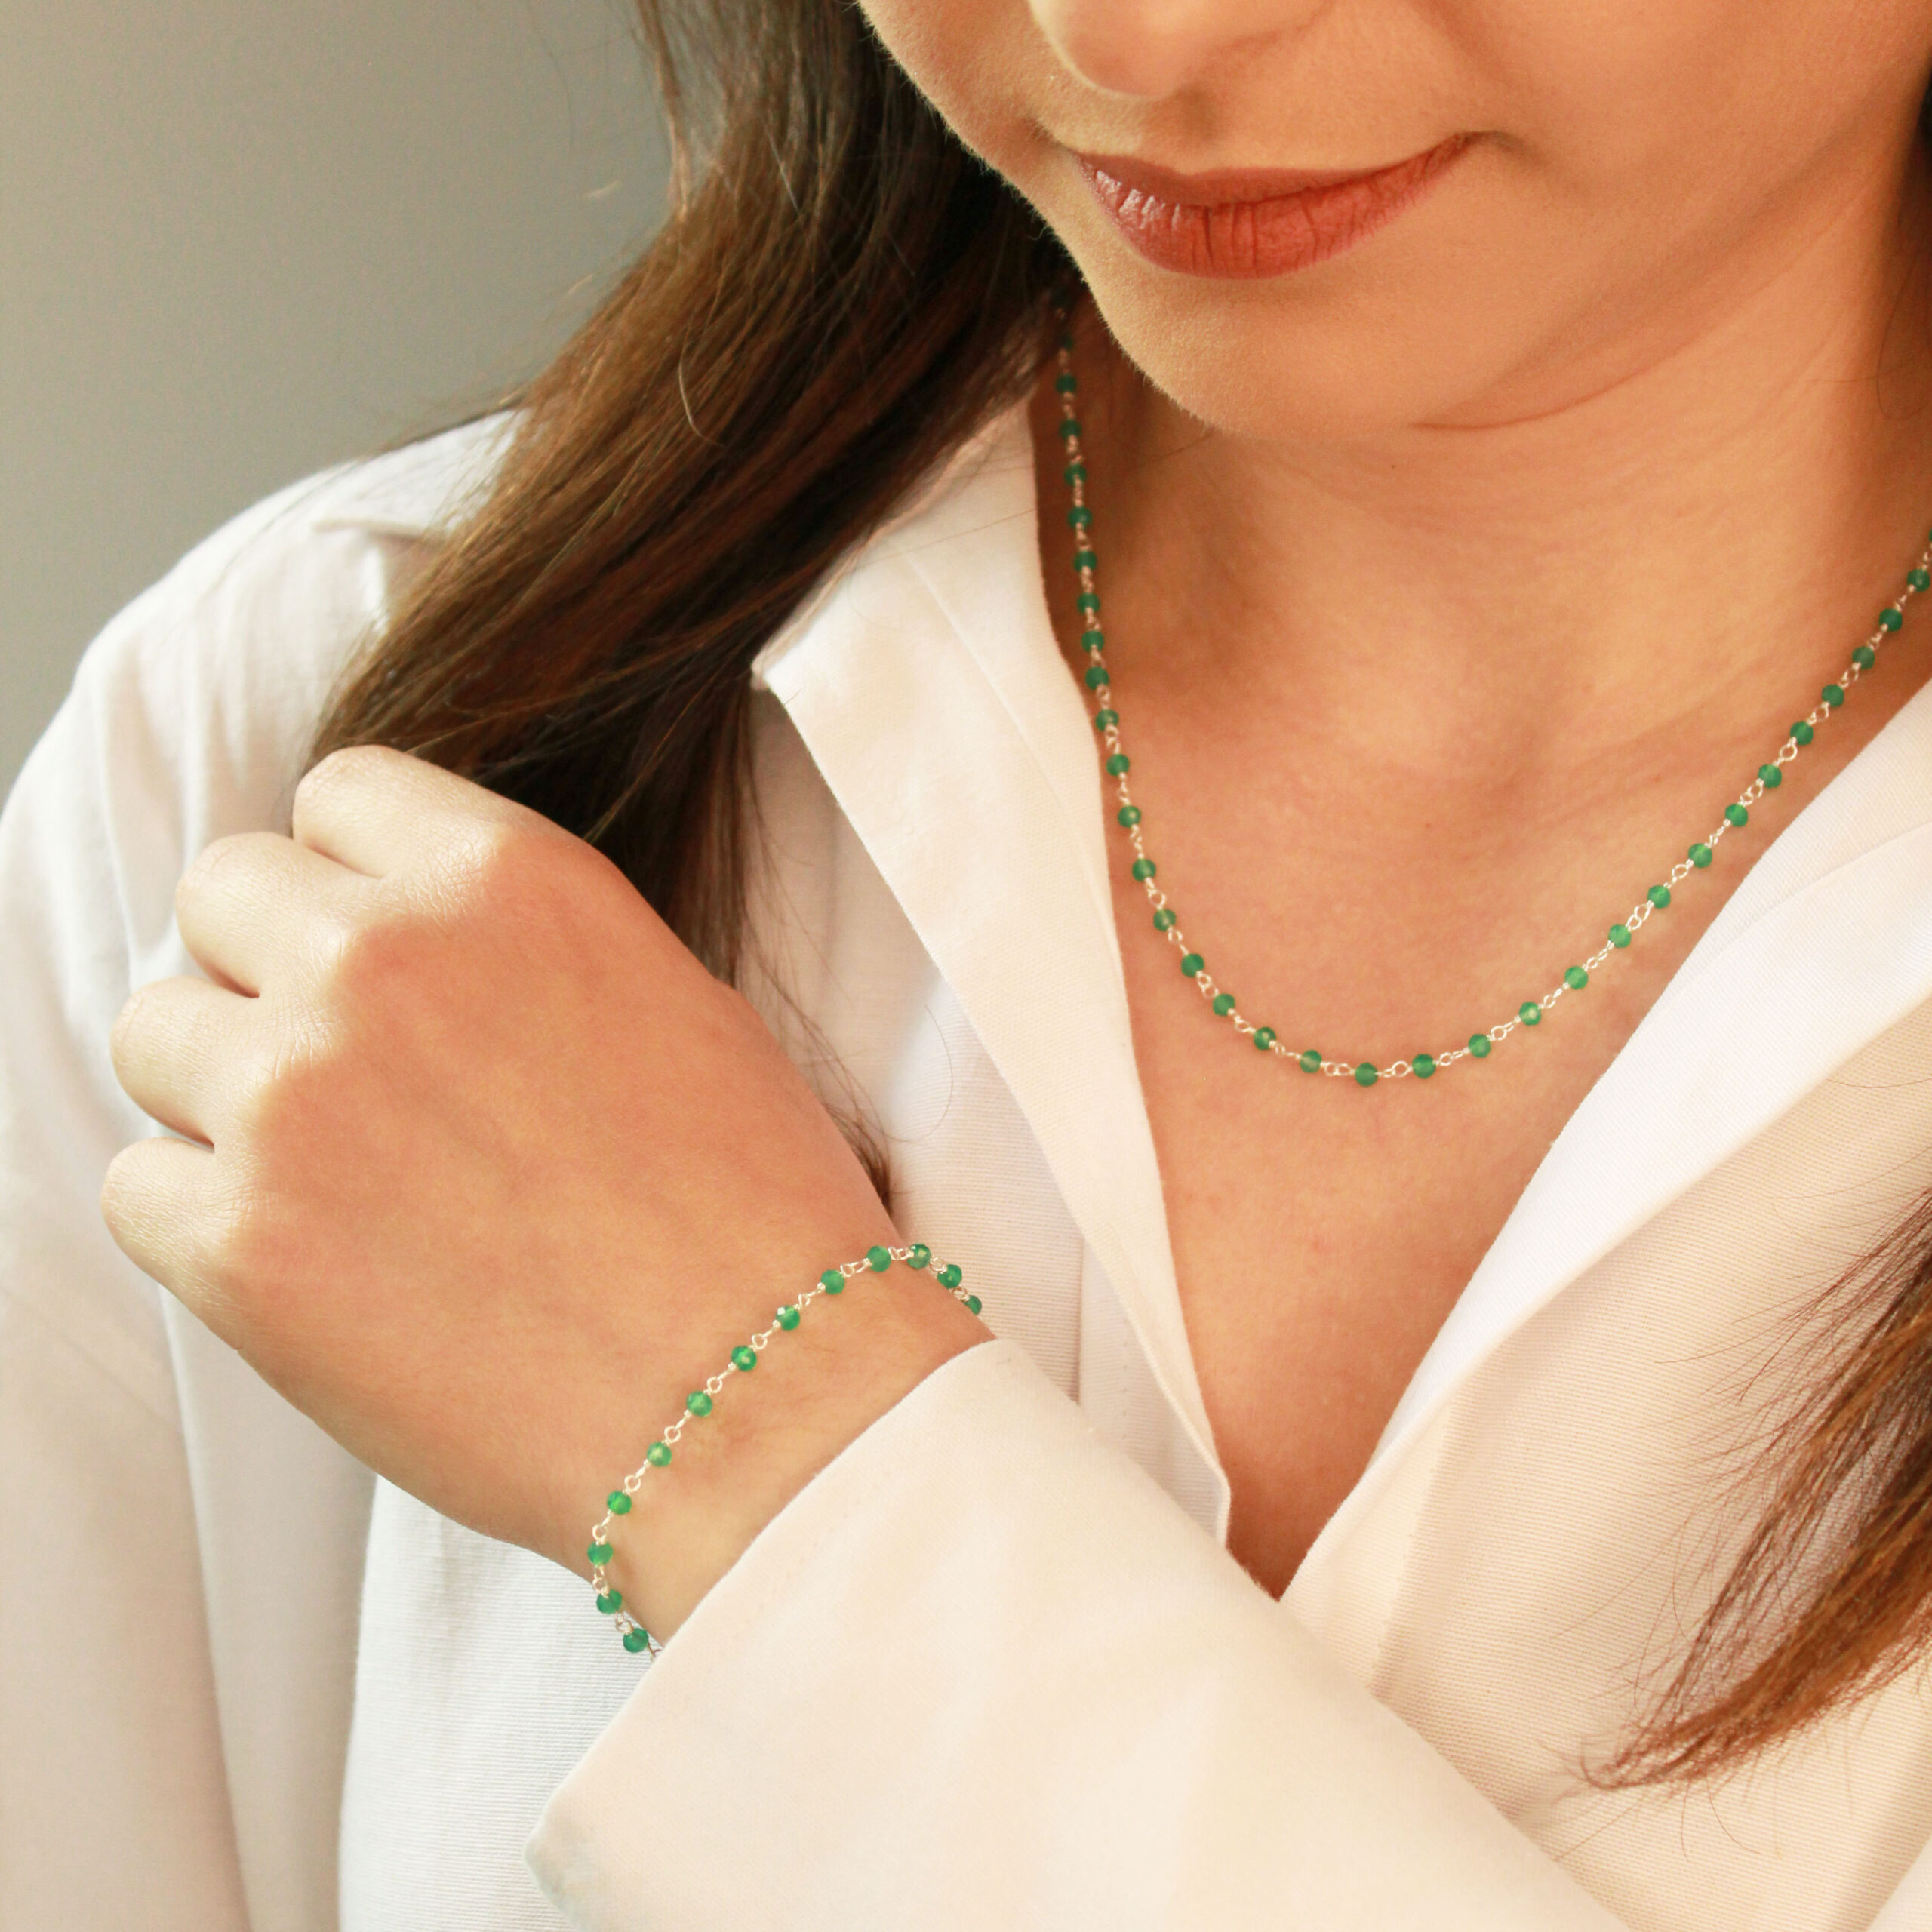 Mondstuk te ontvangen Incarijk Groene onyx armband - 925 zilver - Natuursieraad